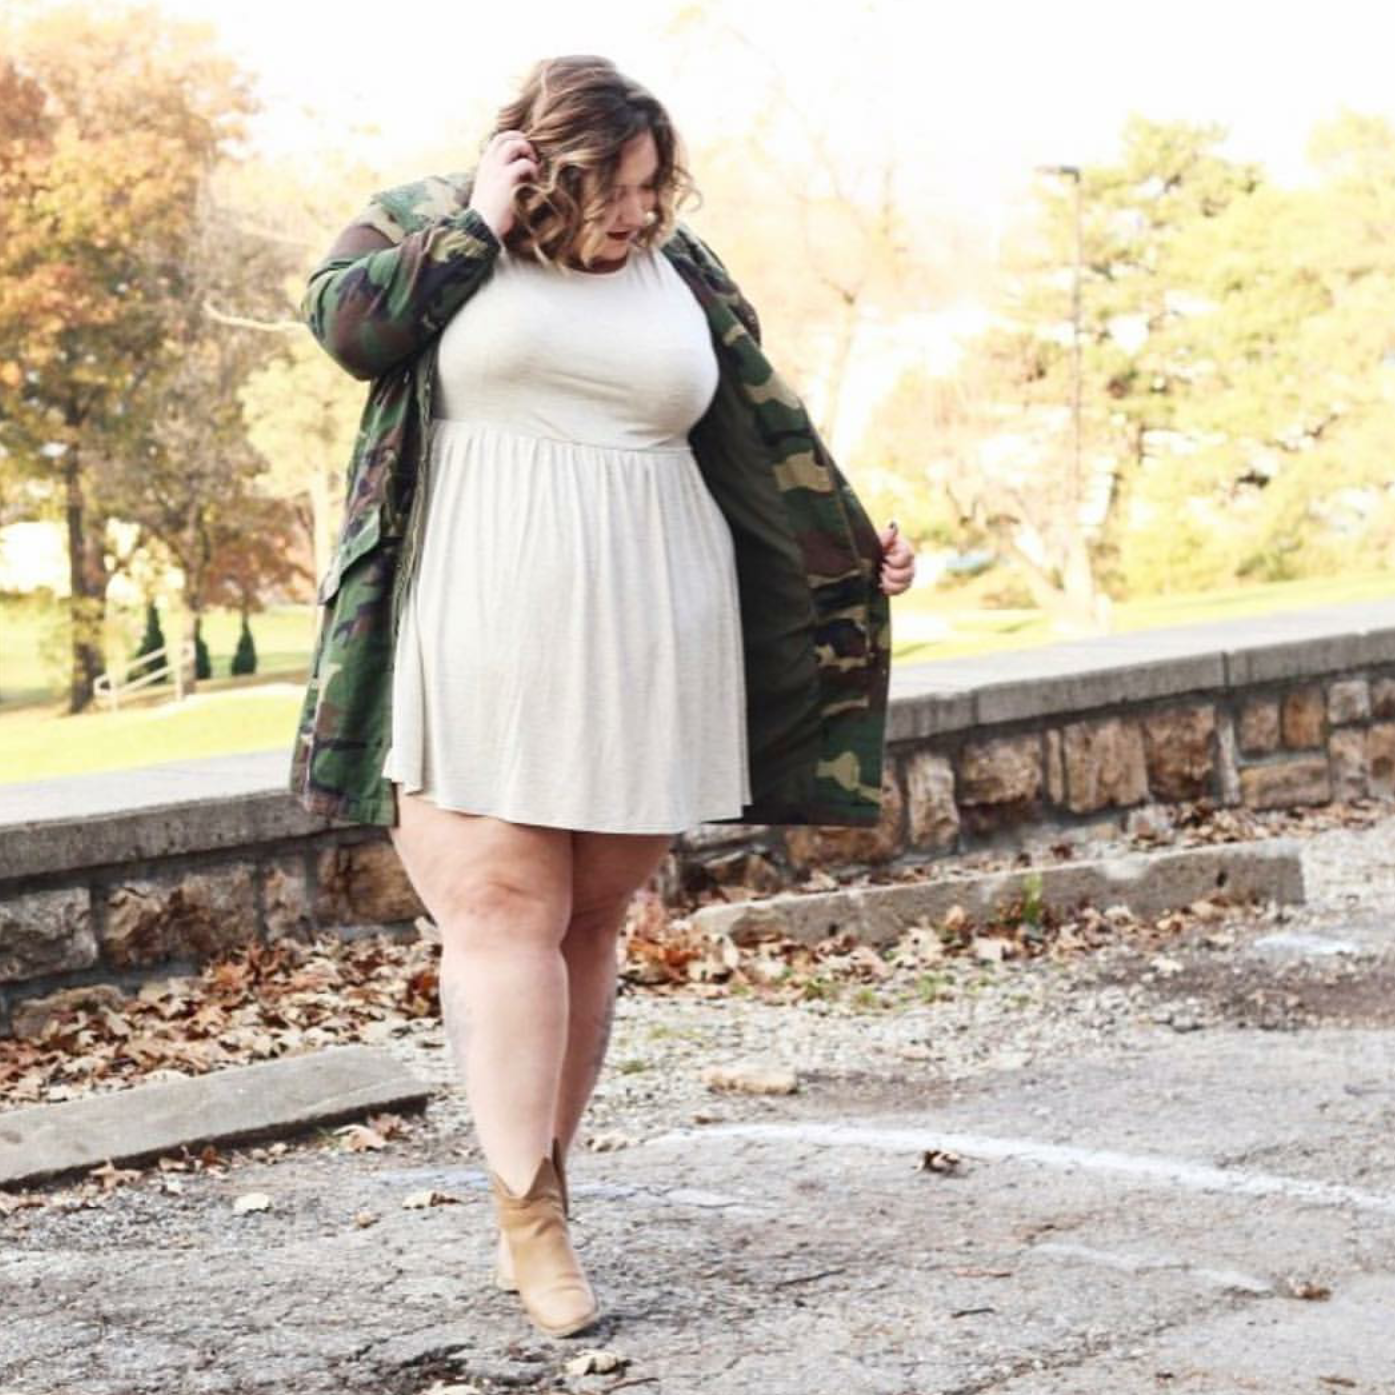 Plus Size Blog Review by Fat Girl Flow - Curvy Sense